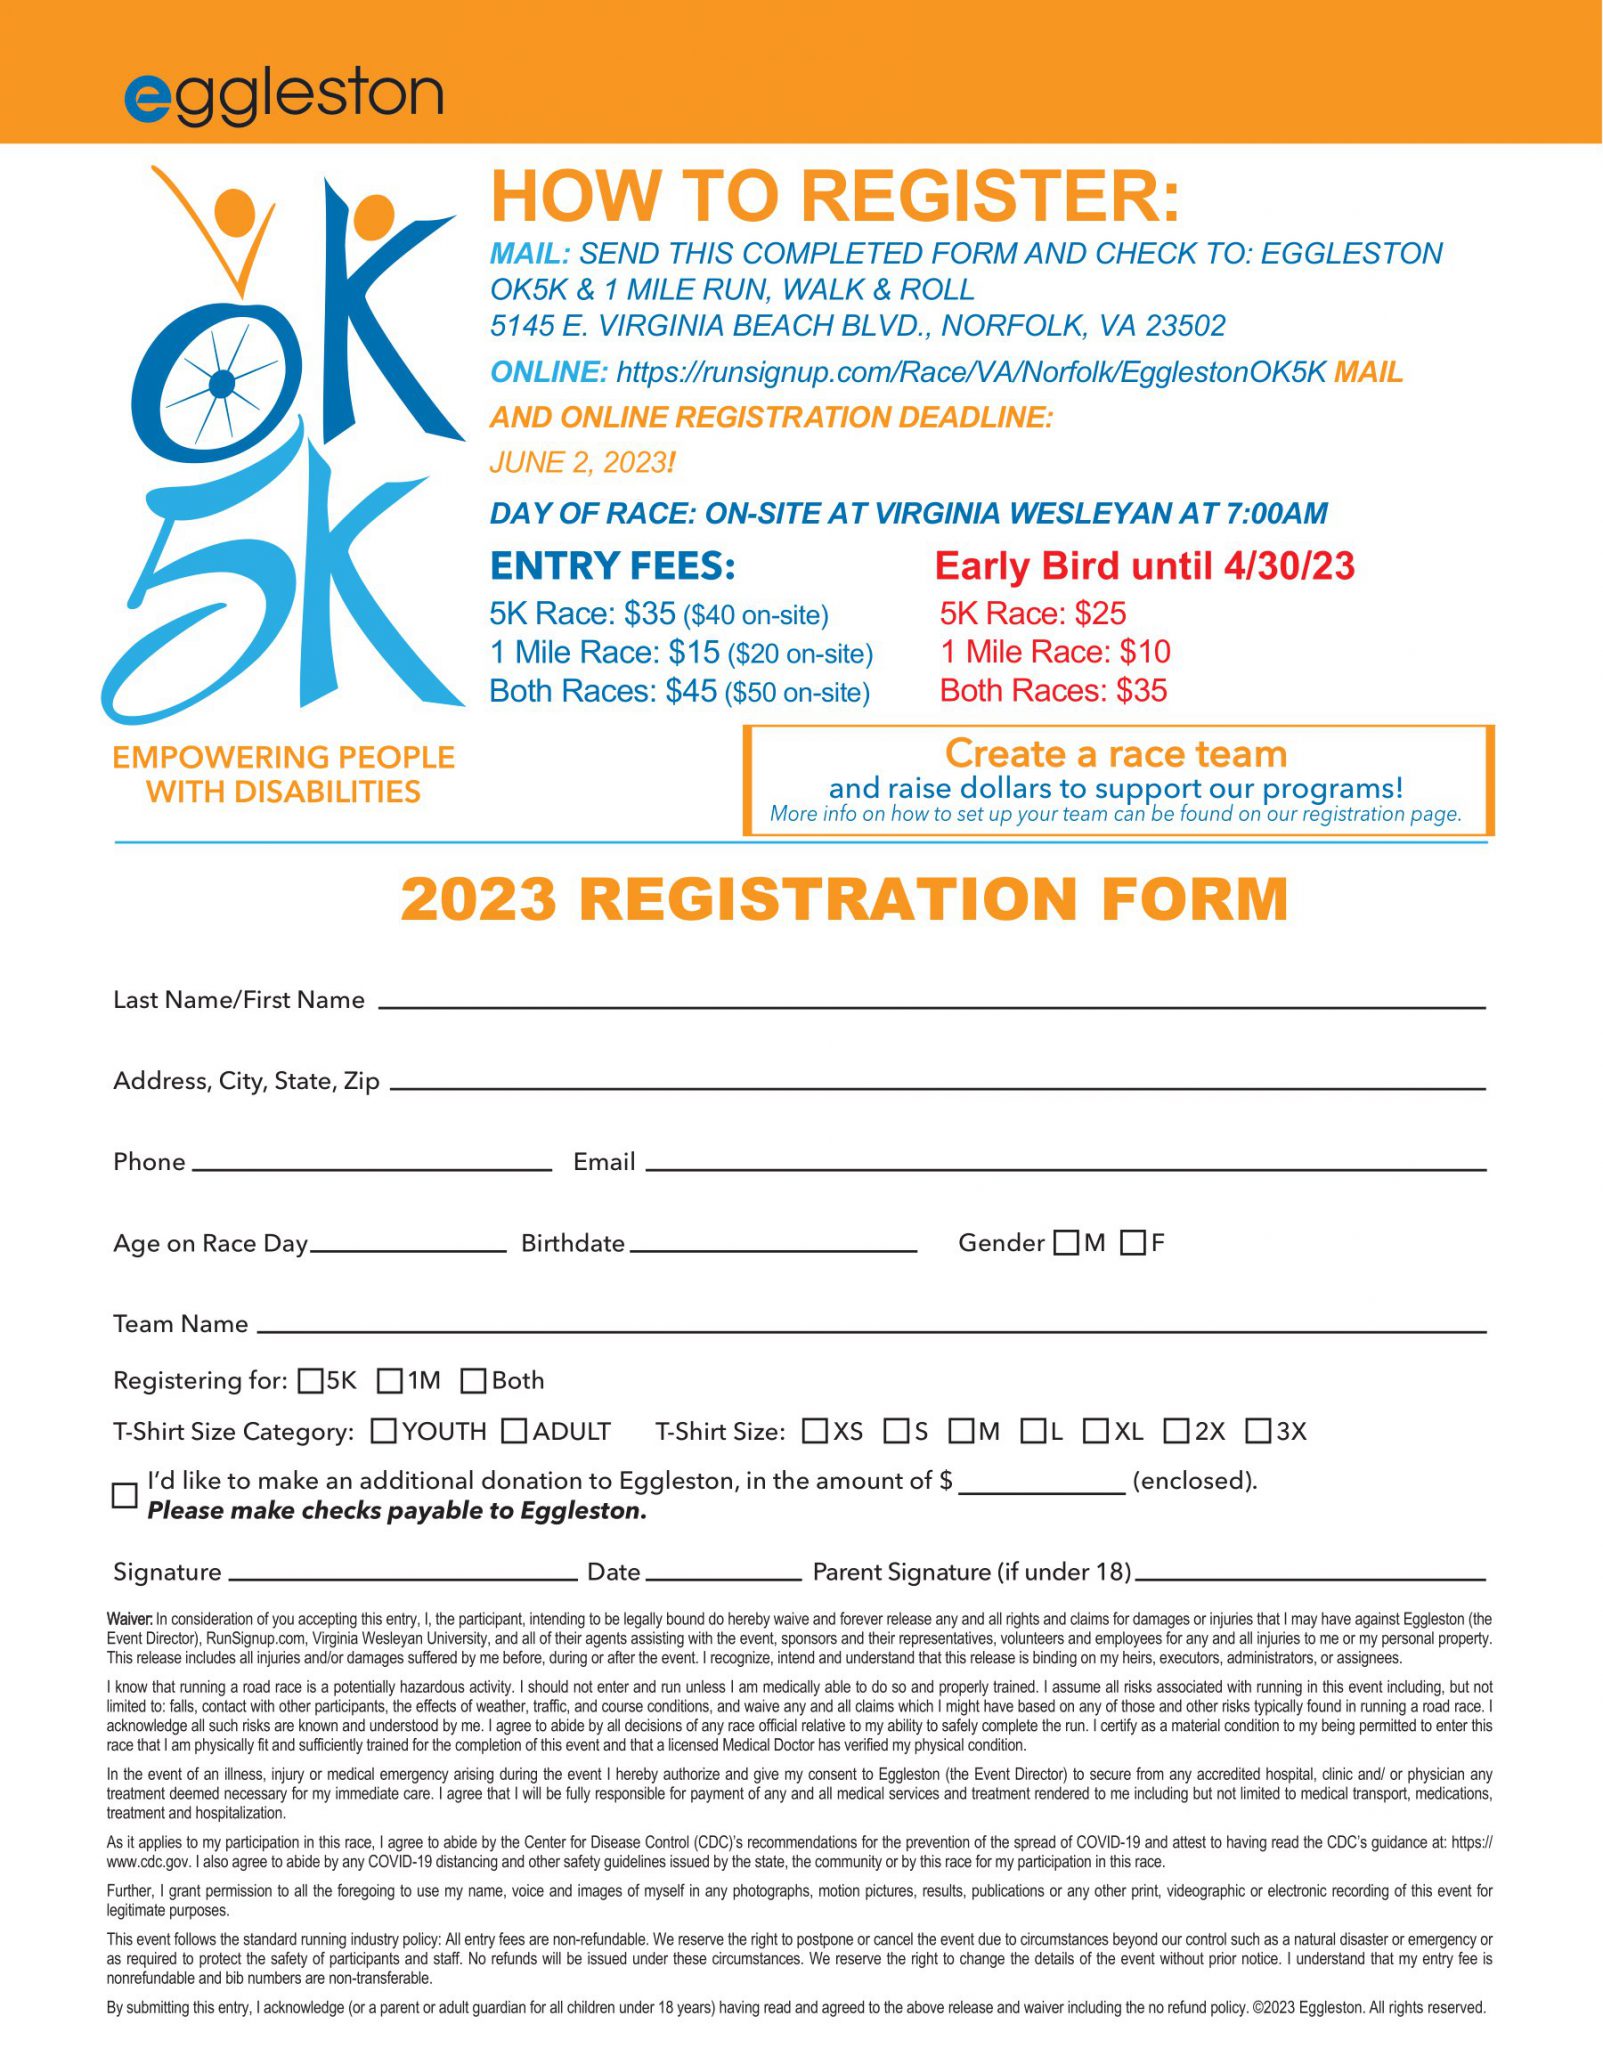 OK5K 2022 Registration form